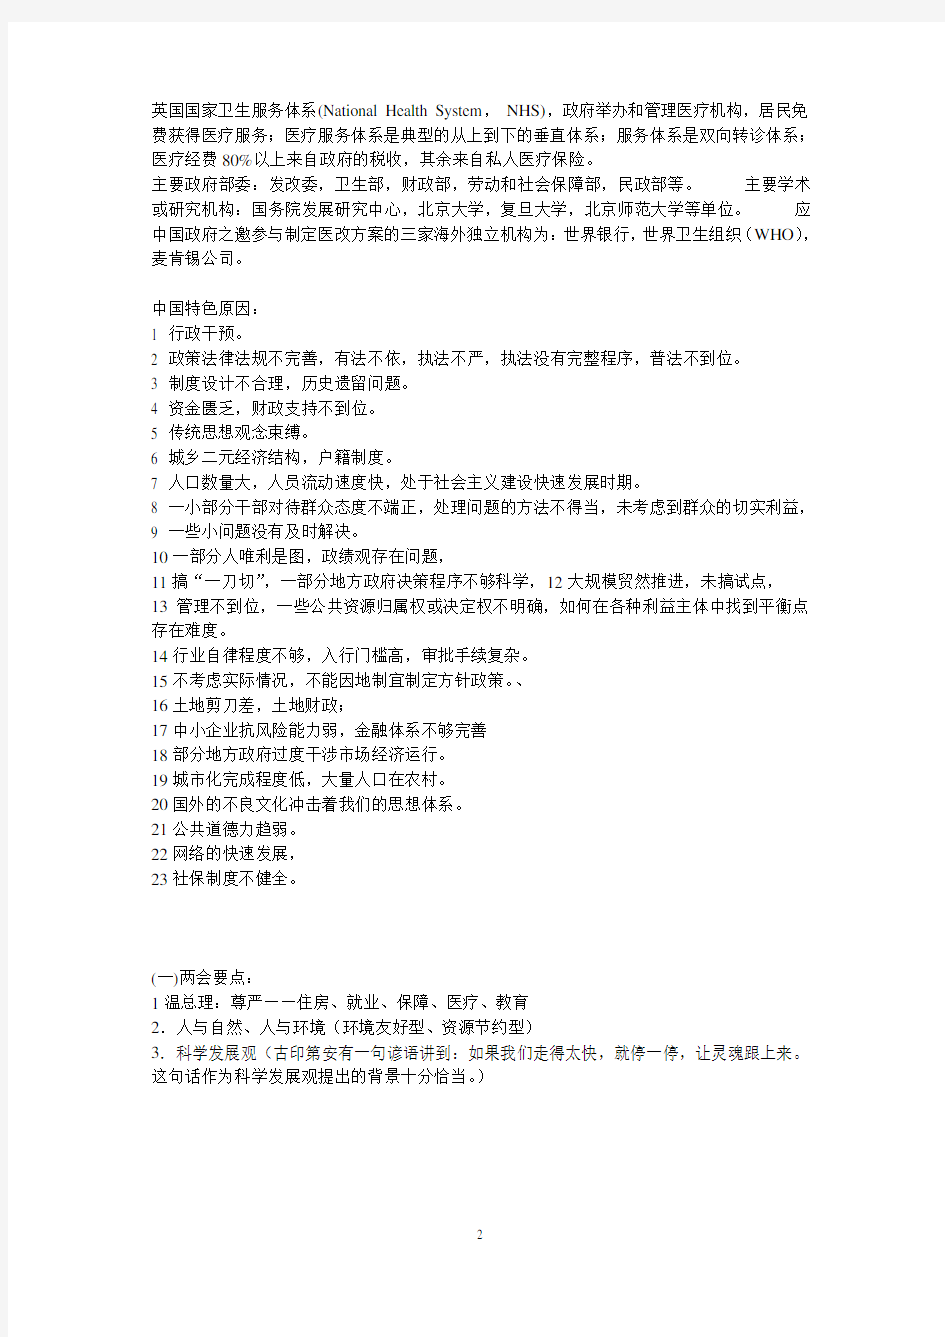 中国特色原因+医改.pdf